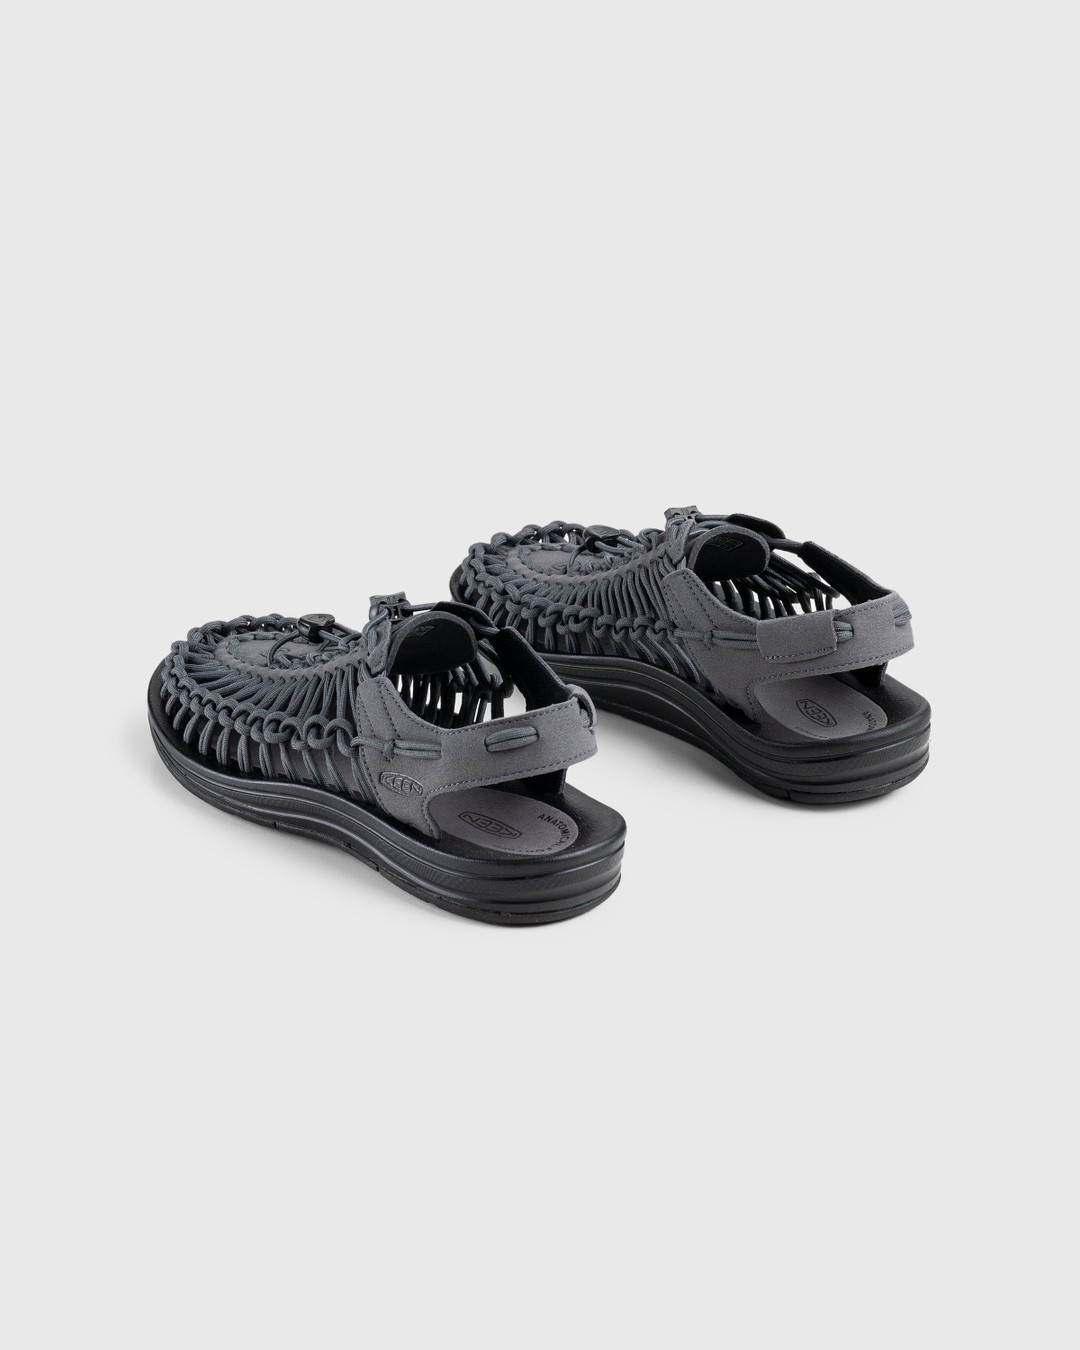 Keen – Uneek Magnet/Black - Sandals - Grey - Image 4